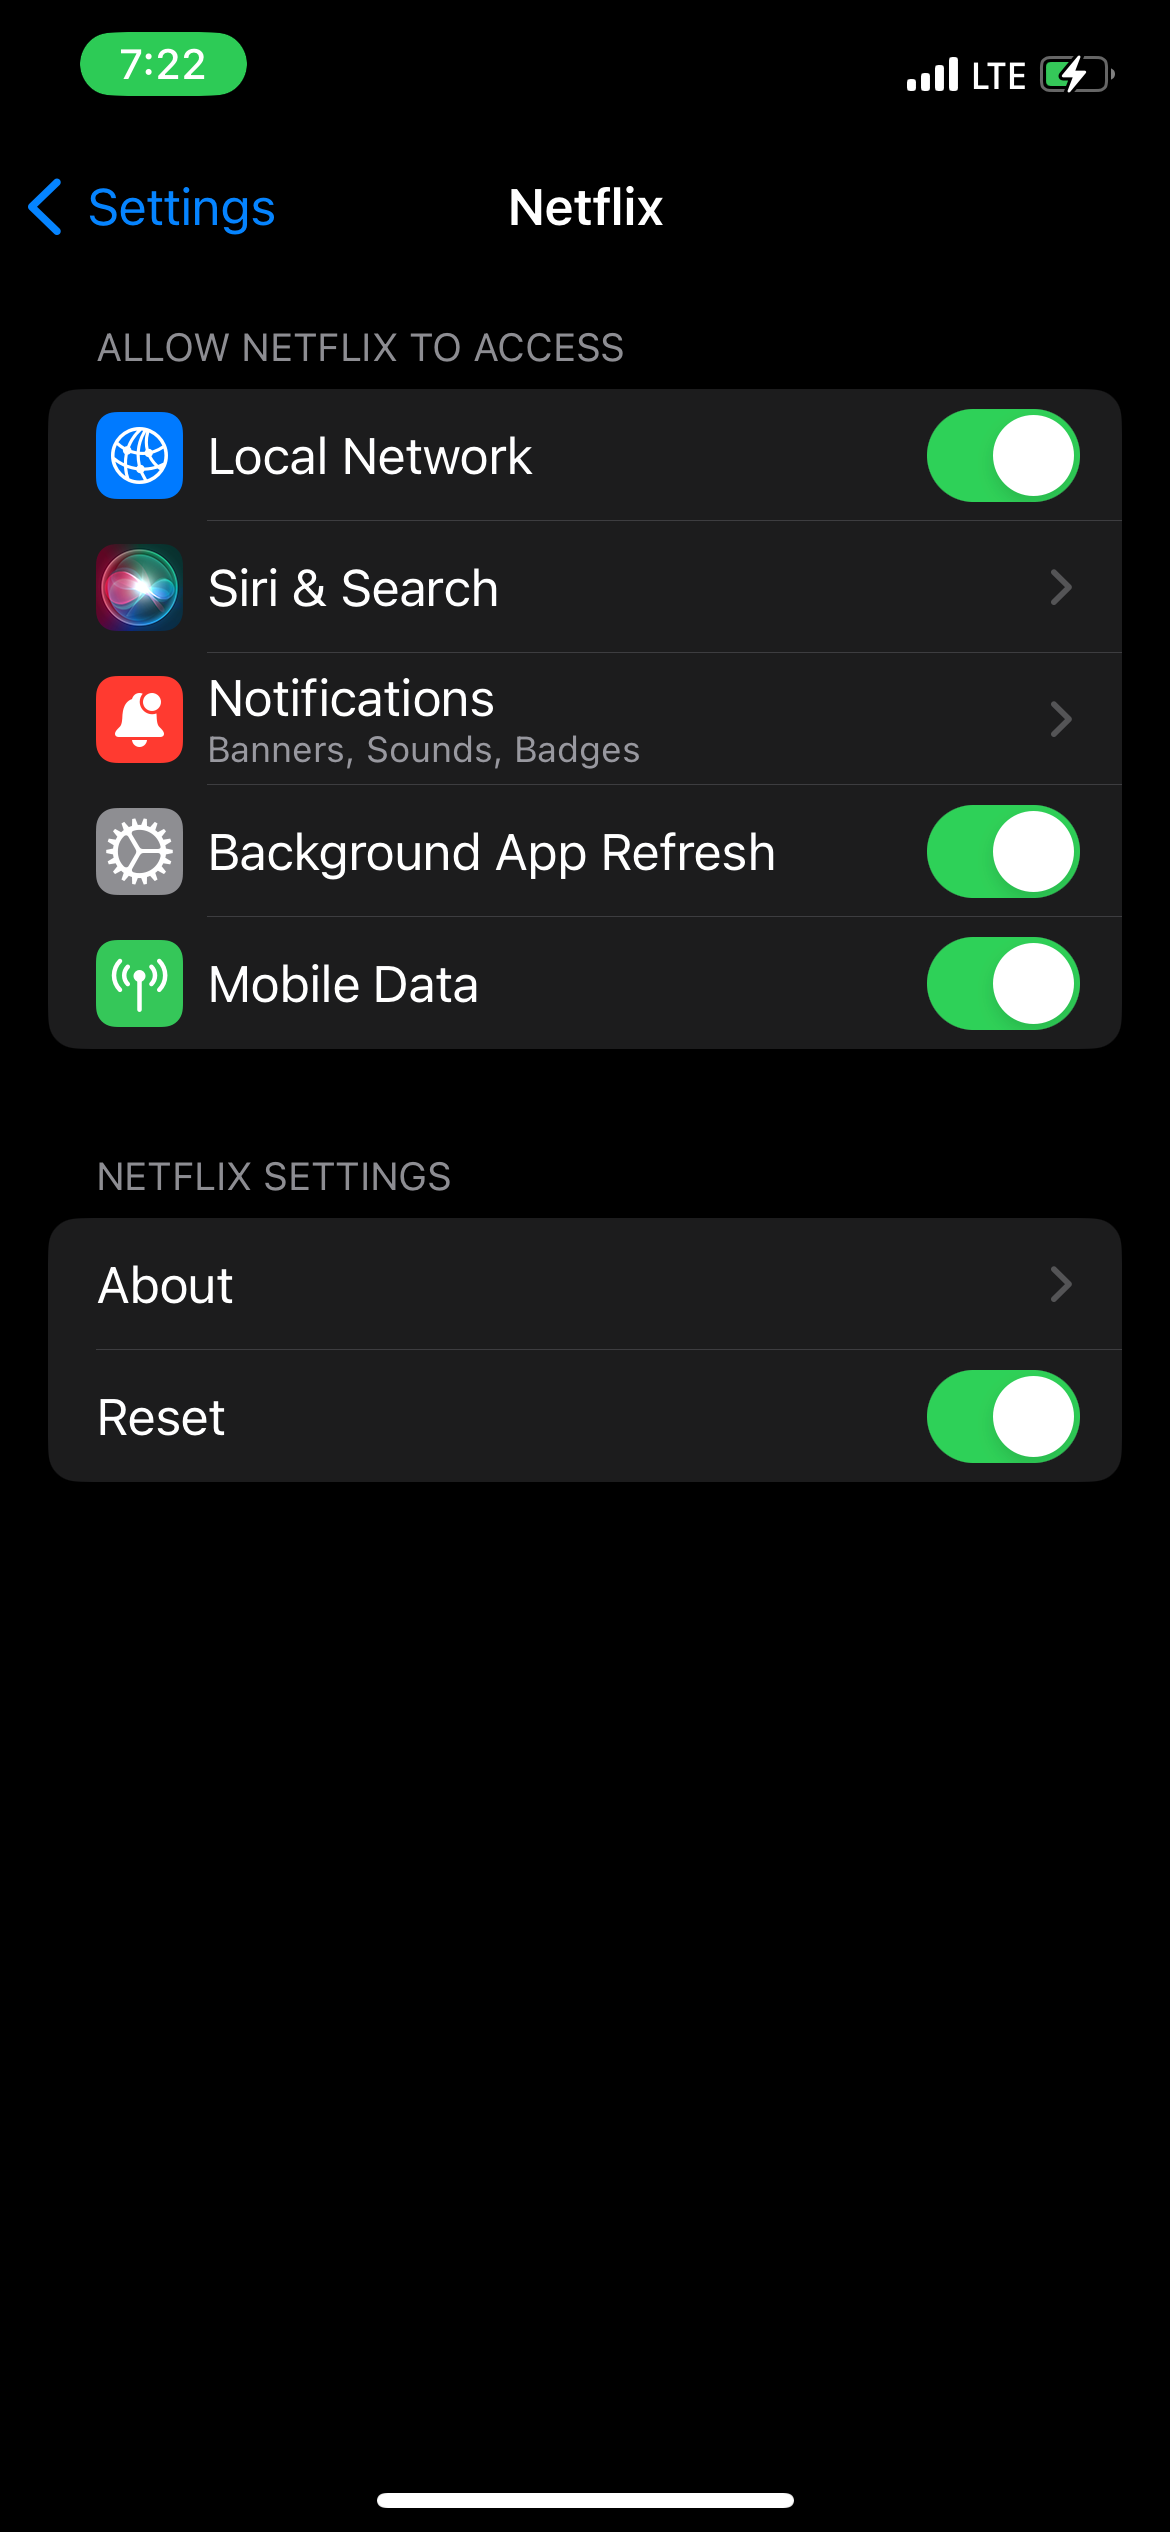 Alihkan opsi reset di pengaturan Netflix di iOS